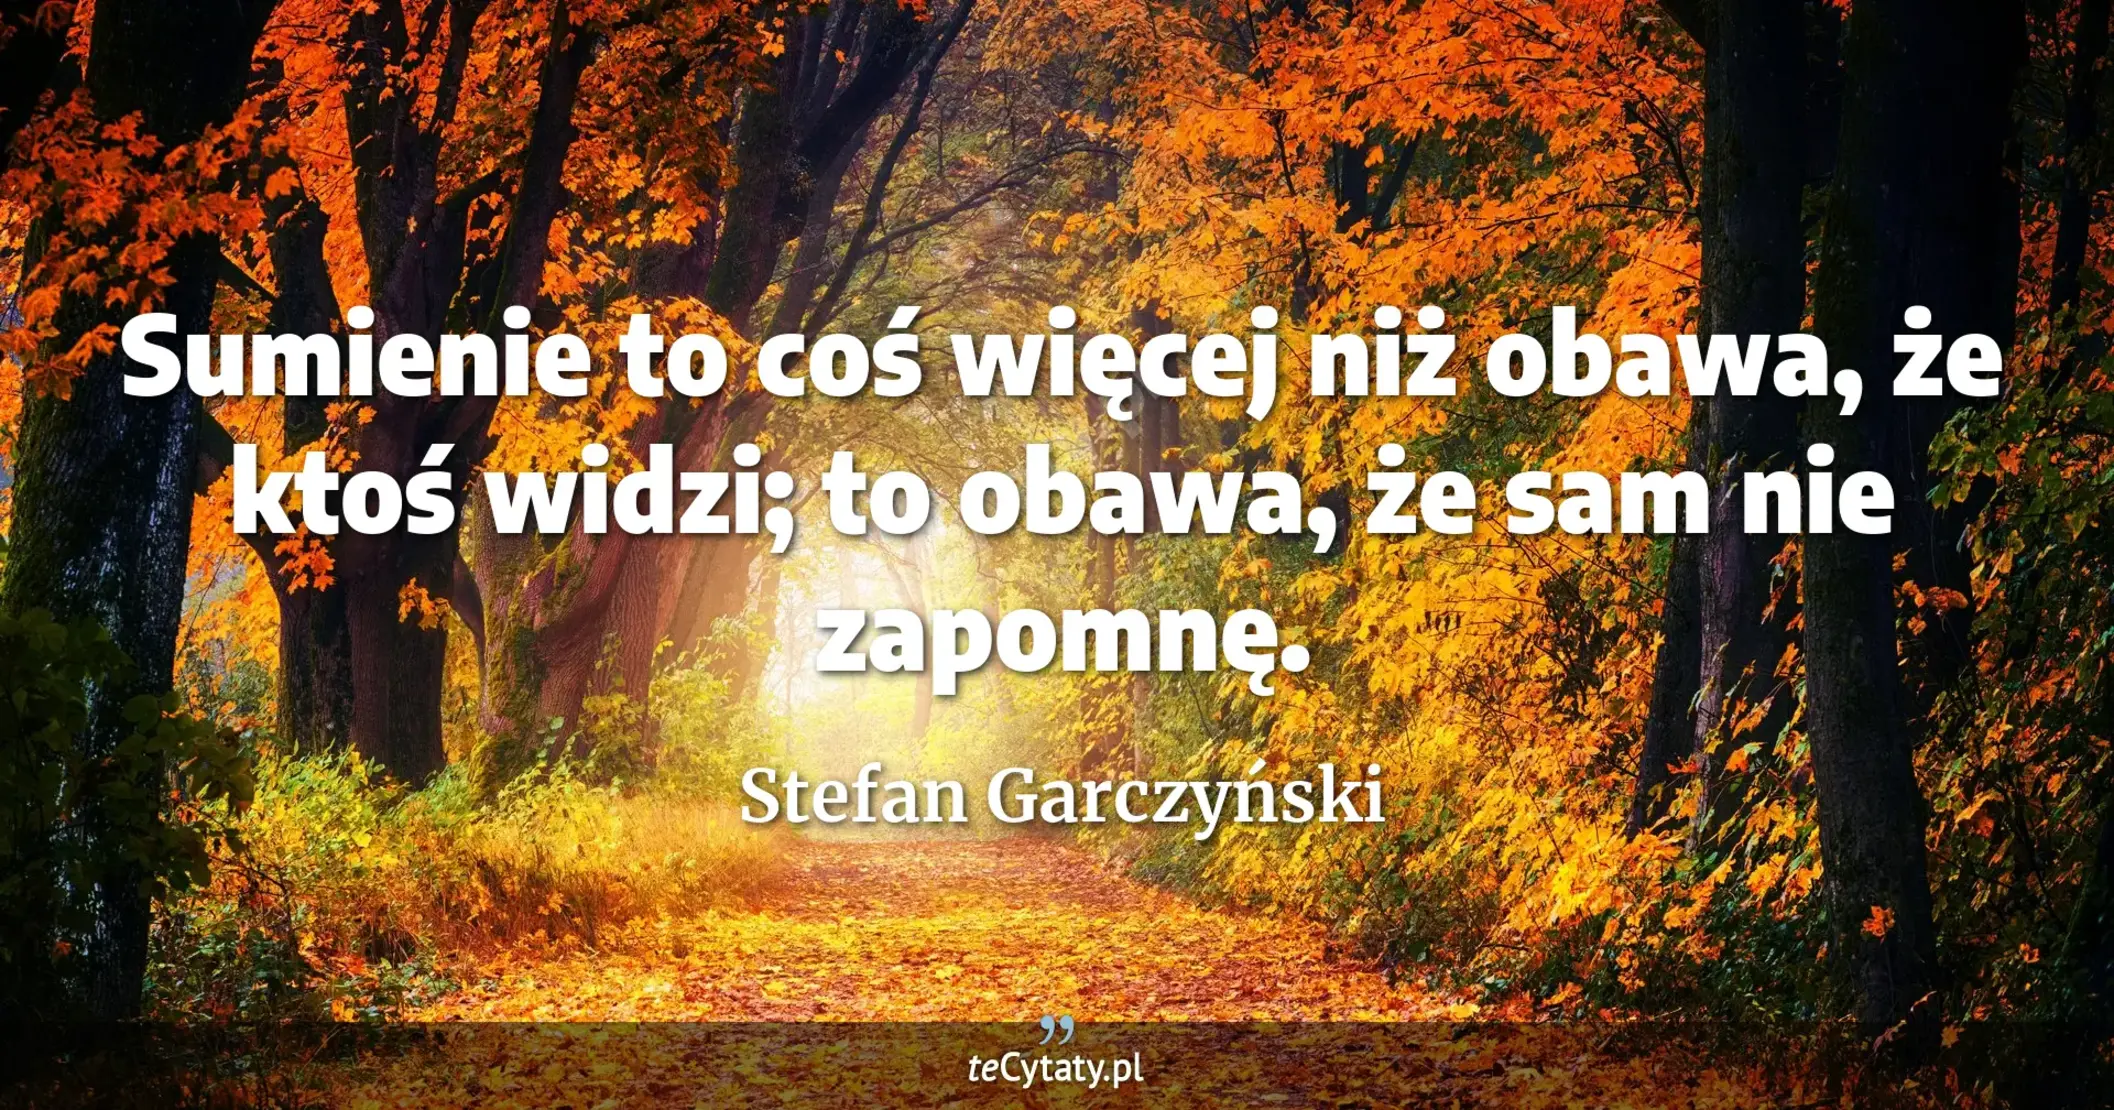 Sumienie to coś więcej niż obawa, że ktoś widzi; to obawa, że sam nie zapomnę. - Stefan Garczyński